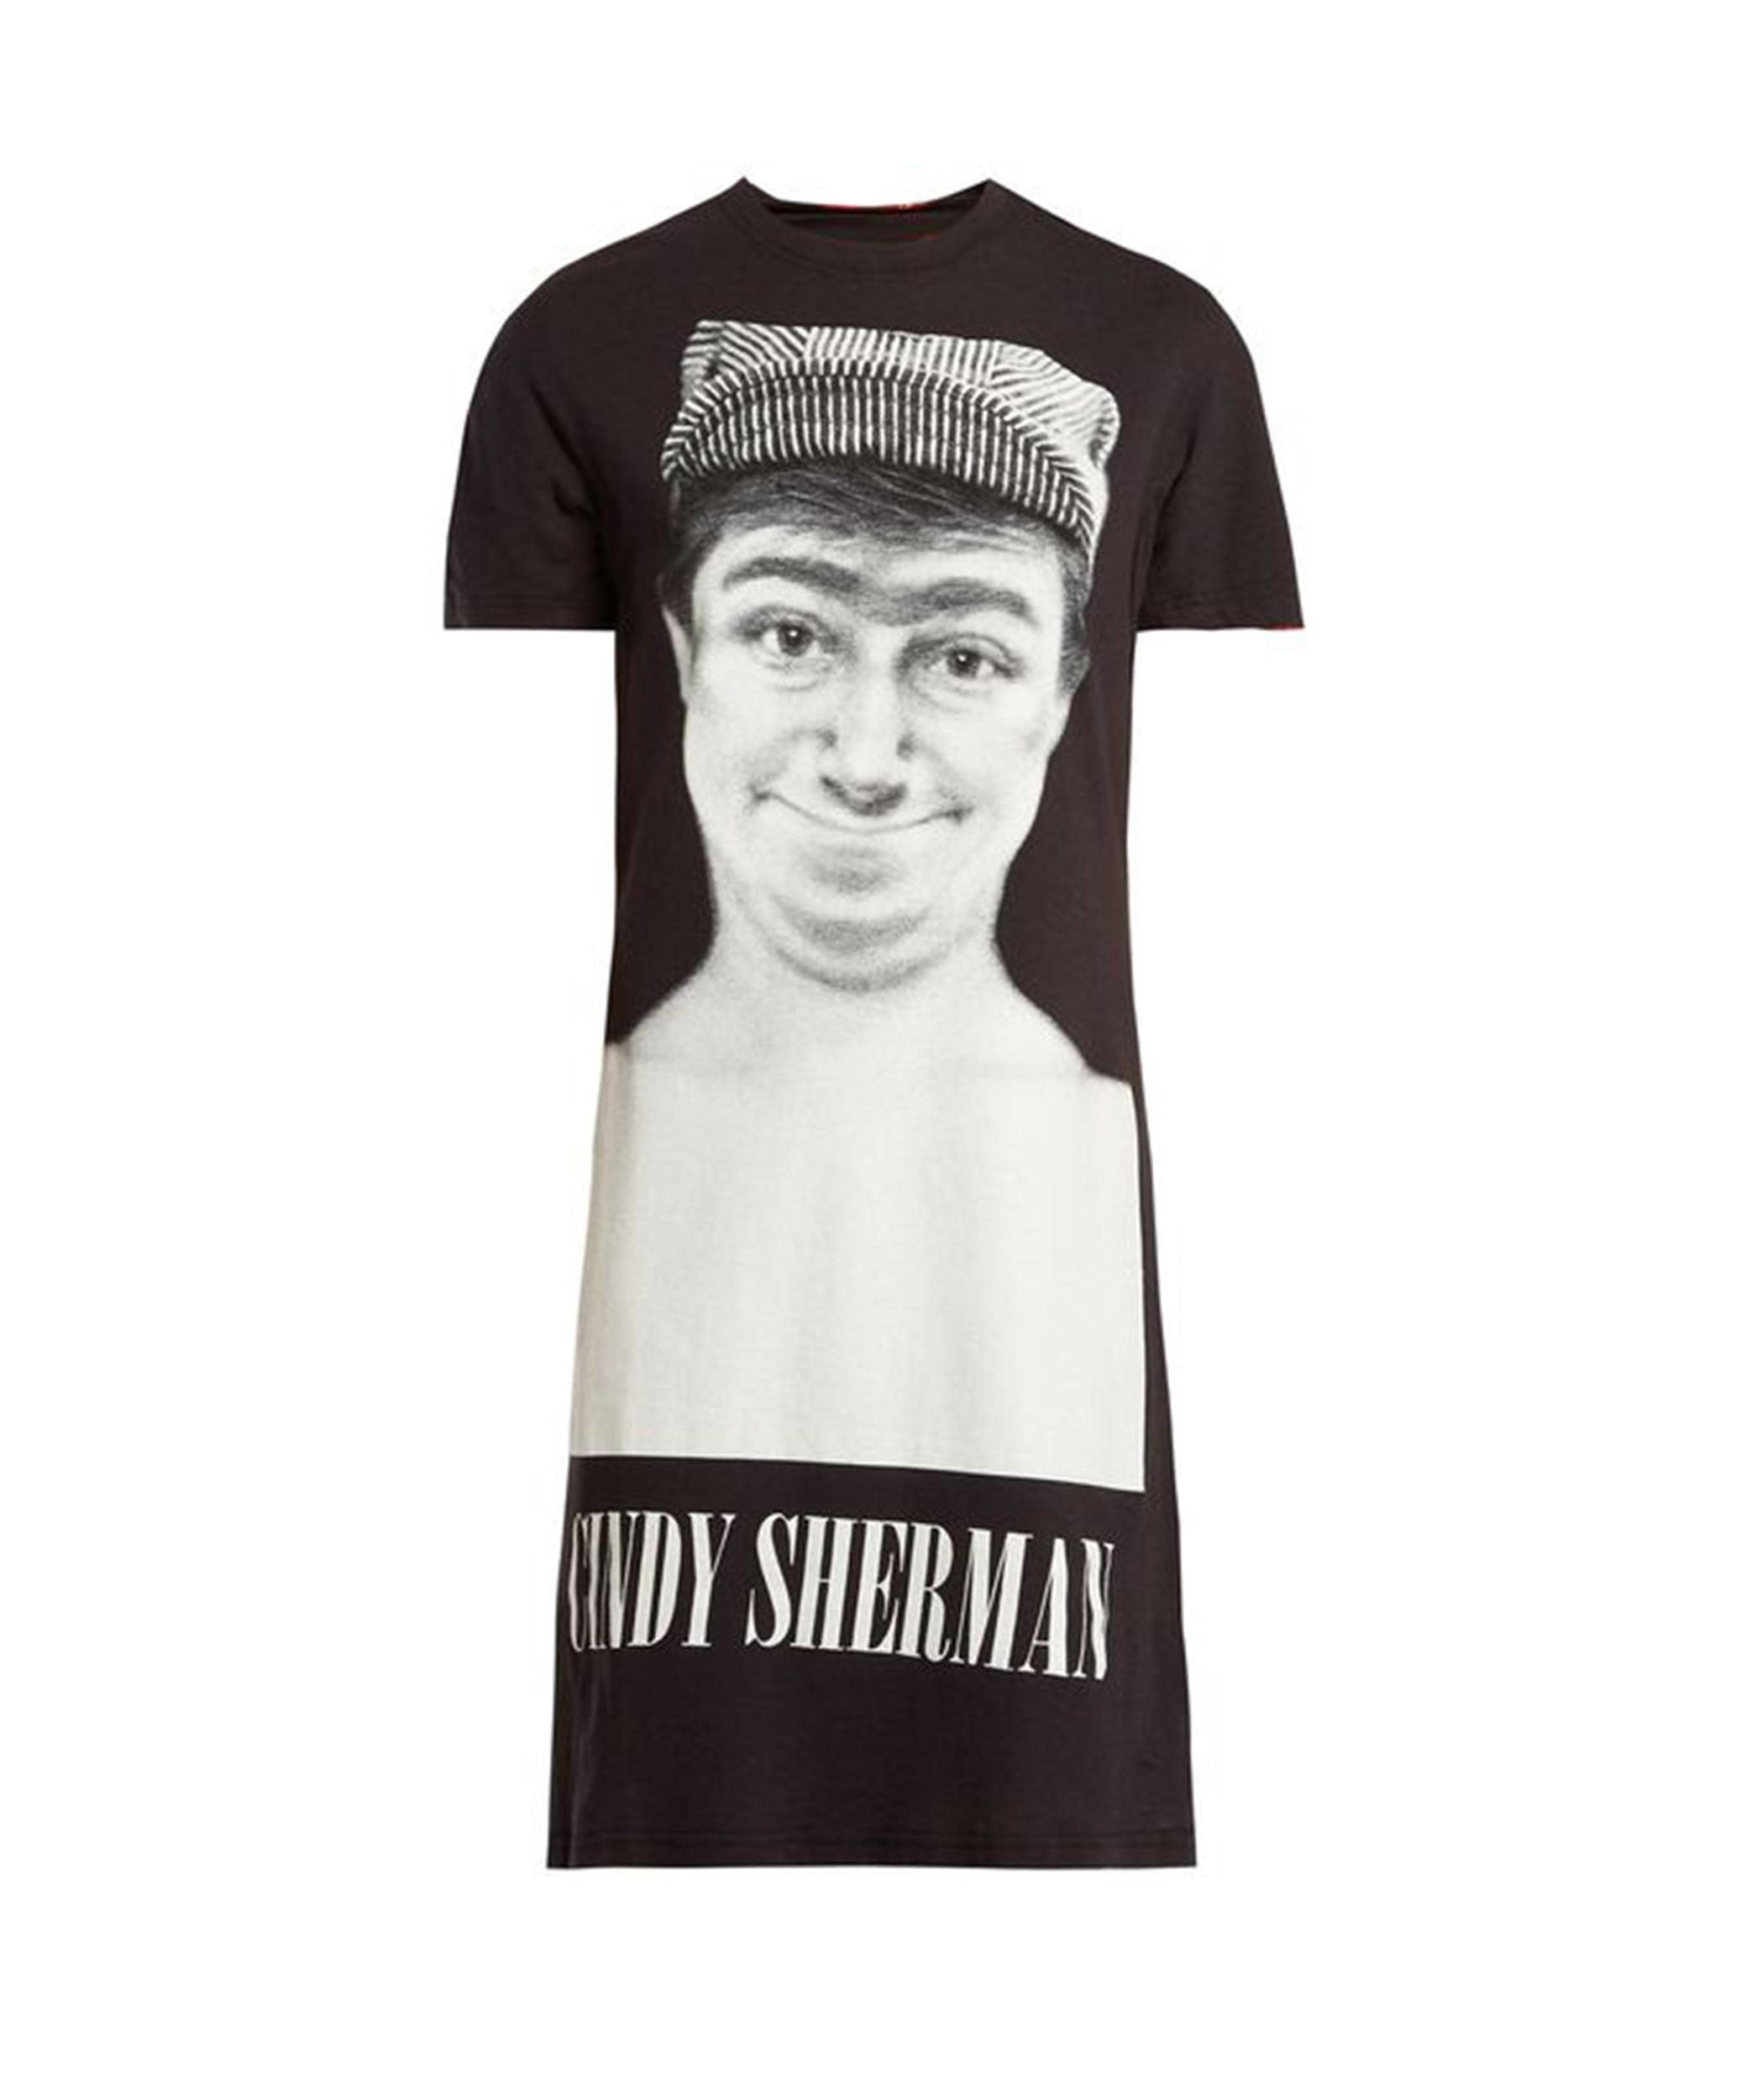 JohnUNDERCOVERCindy Sherman reversible T-shirt dress